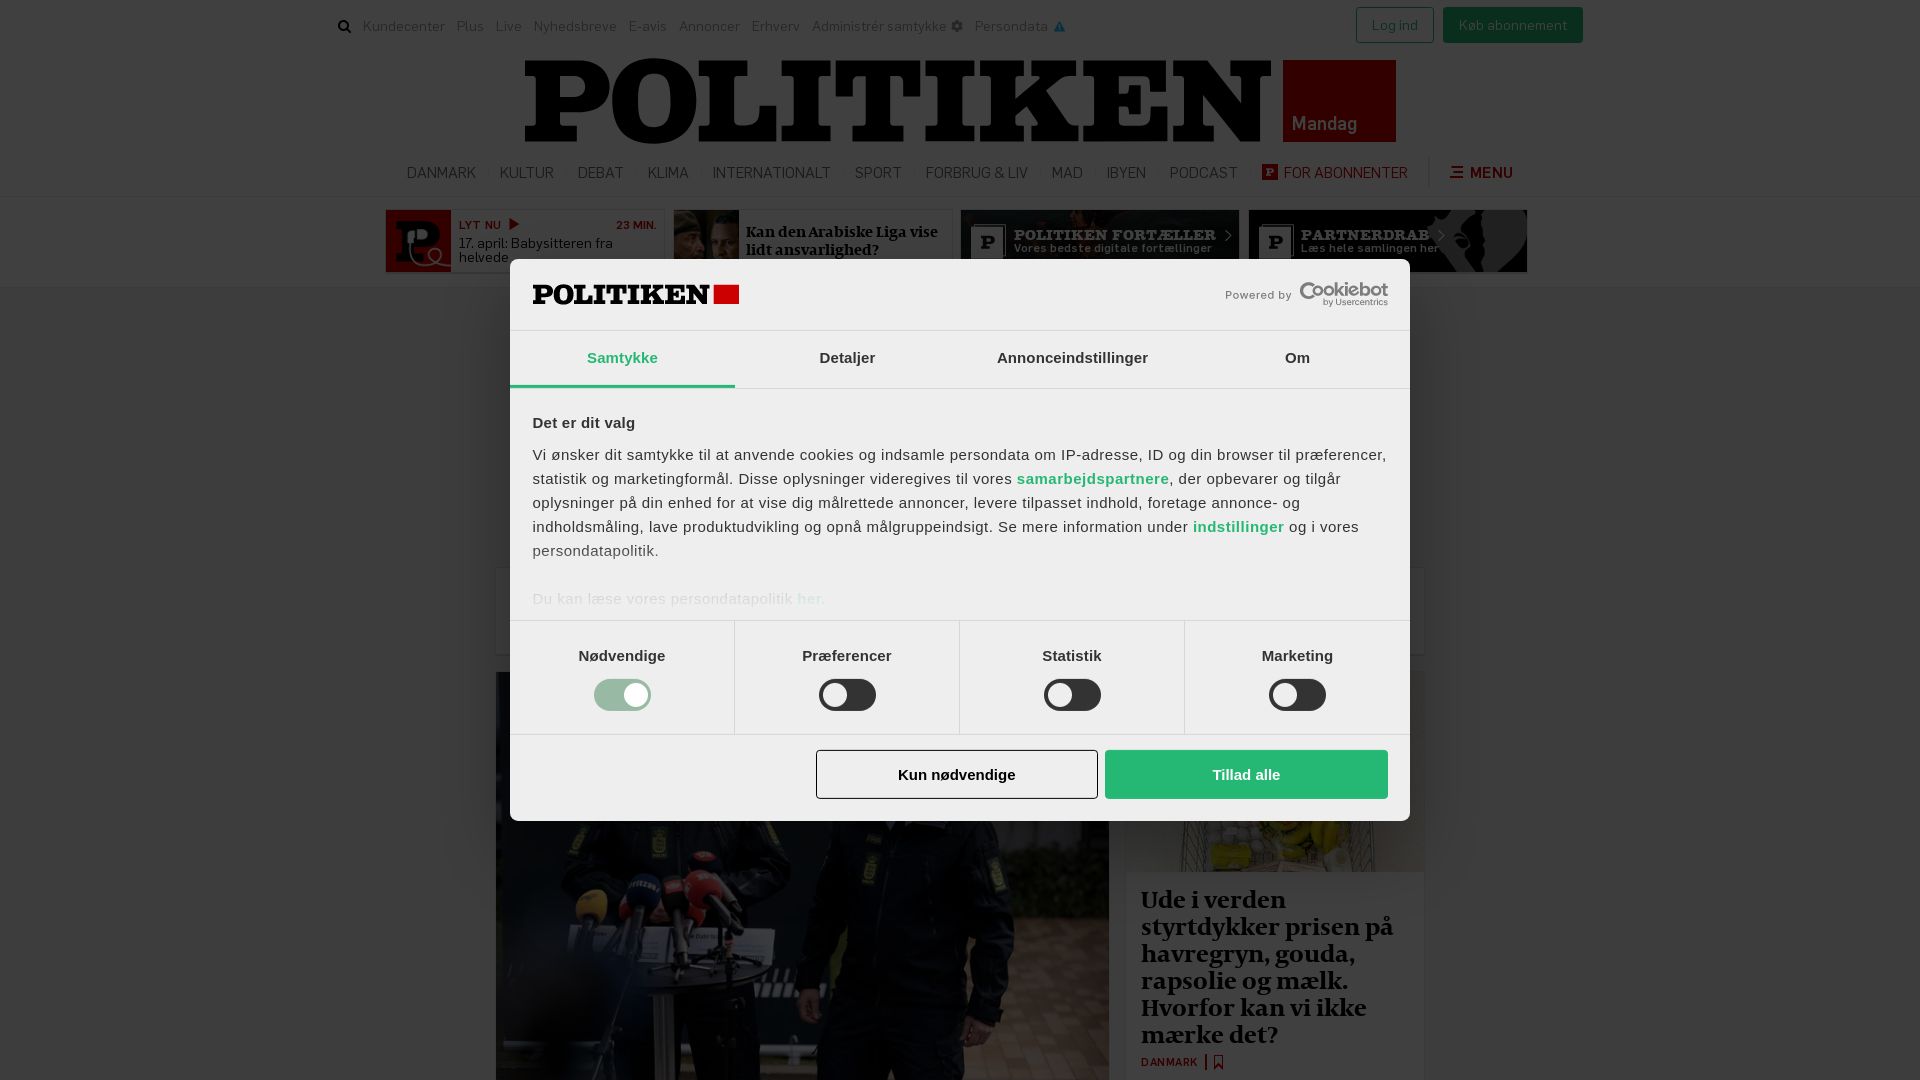 网站状态 politiken.dk 是  在线的